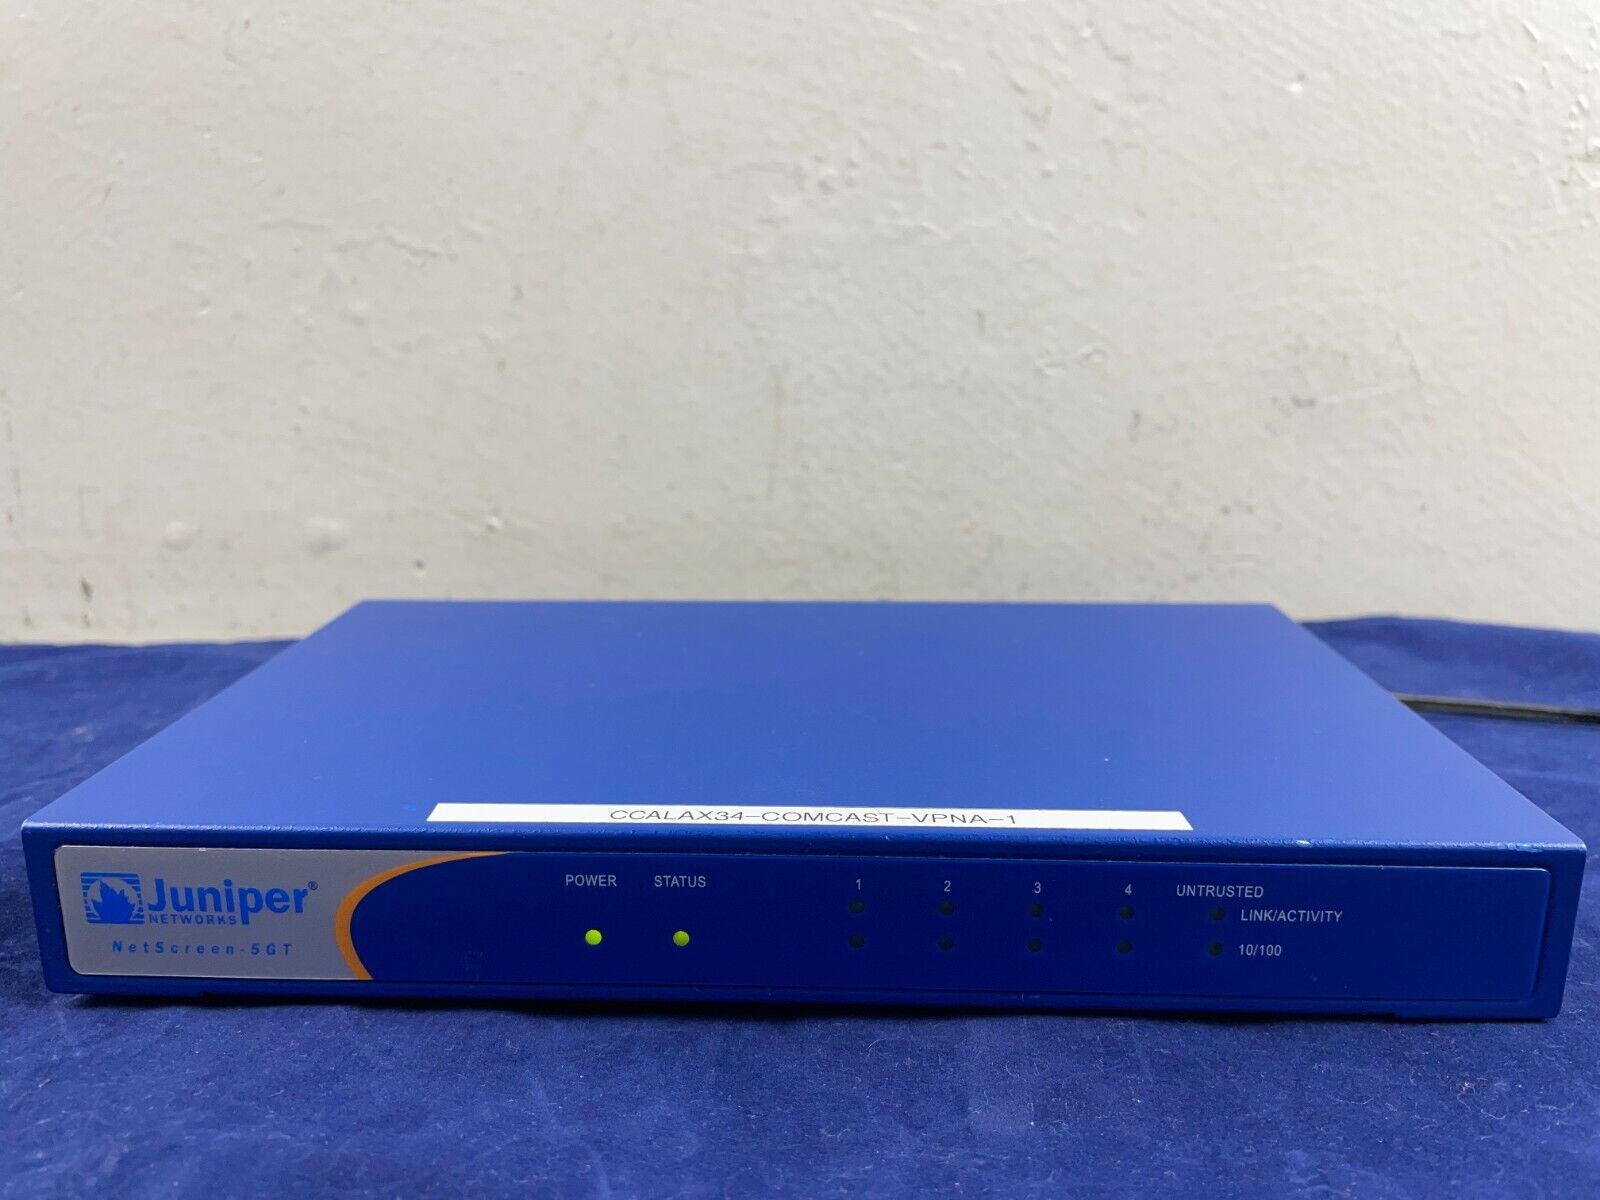 Juniper Networks Netscreen 5GT Firewall Internet Security Appliance NS-5GT-001